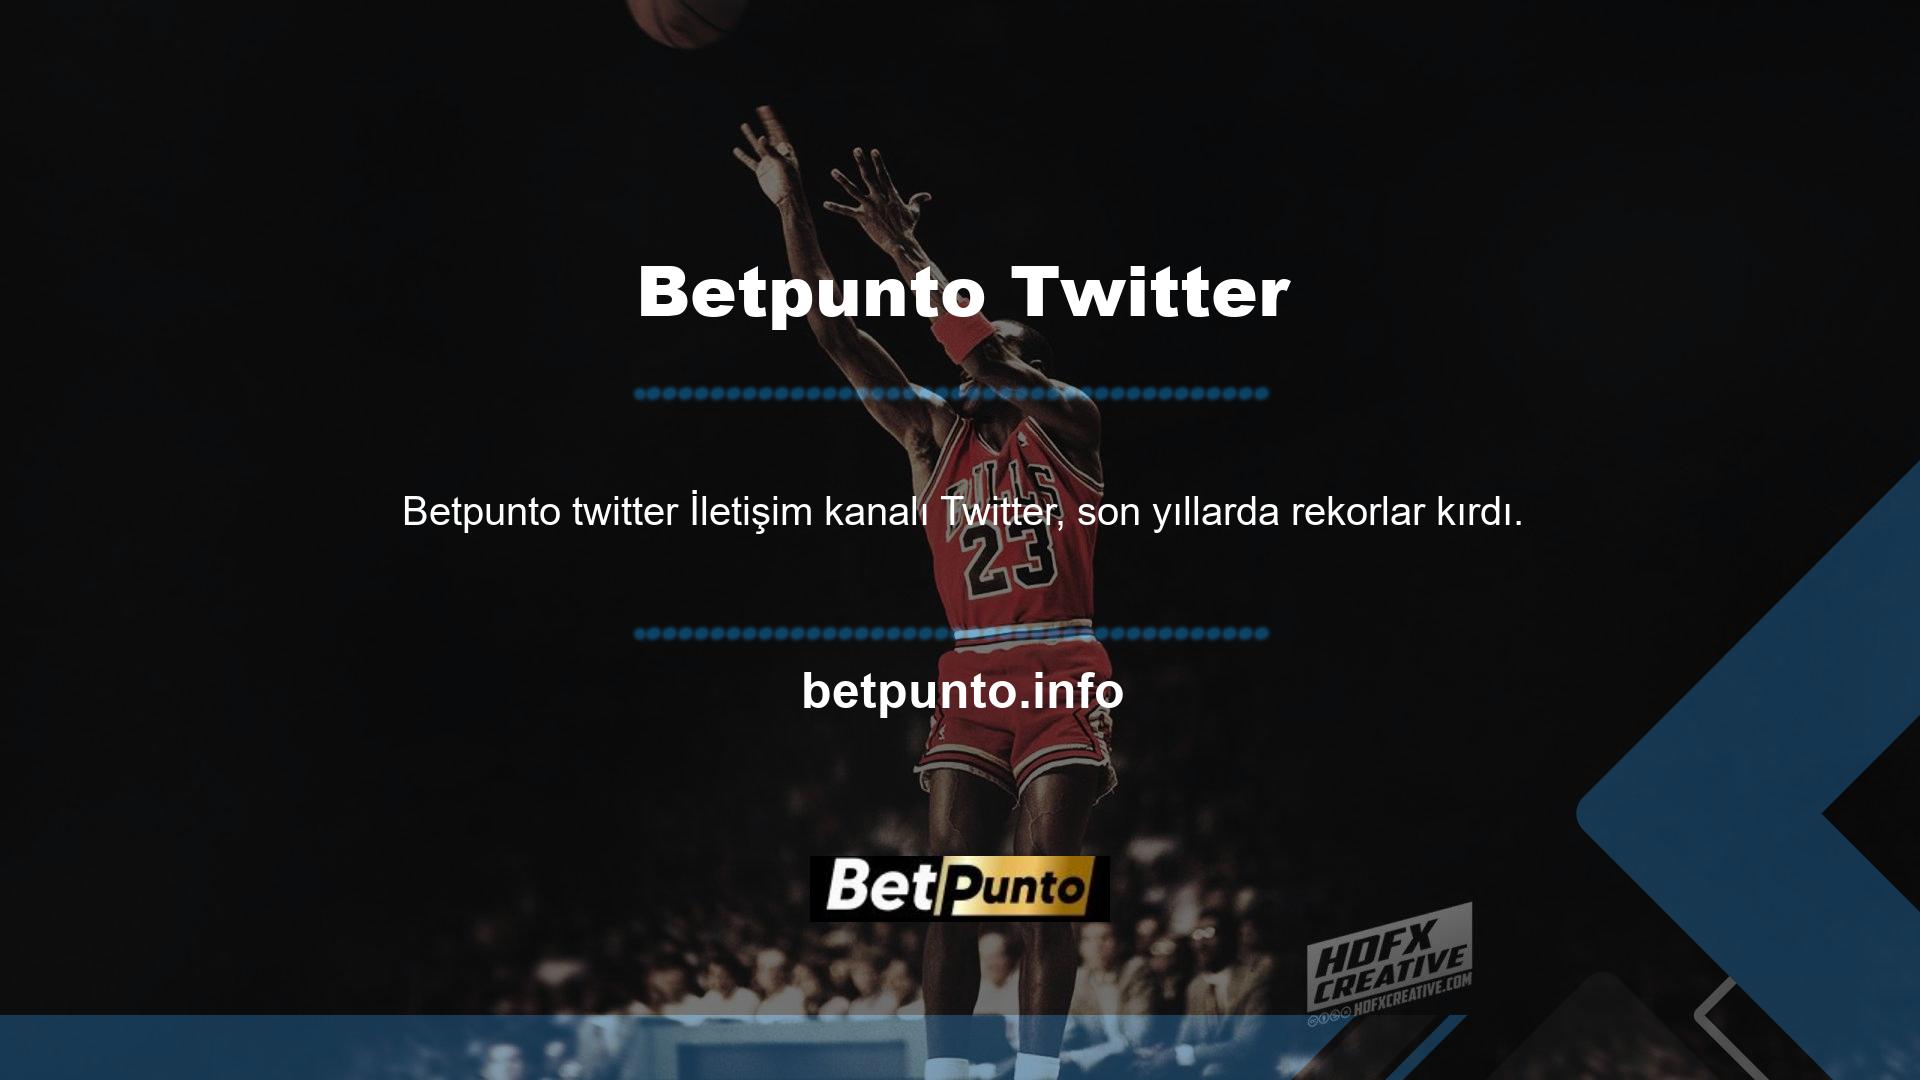 Betpunto Twitter hesabını takip edin, çeşitli avantajlardan yararlanın